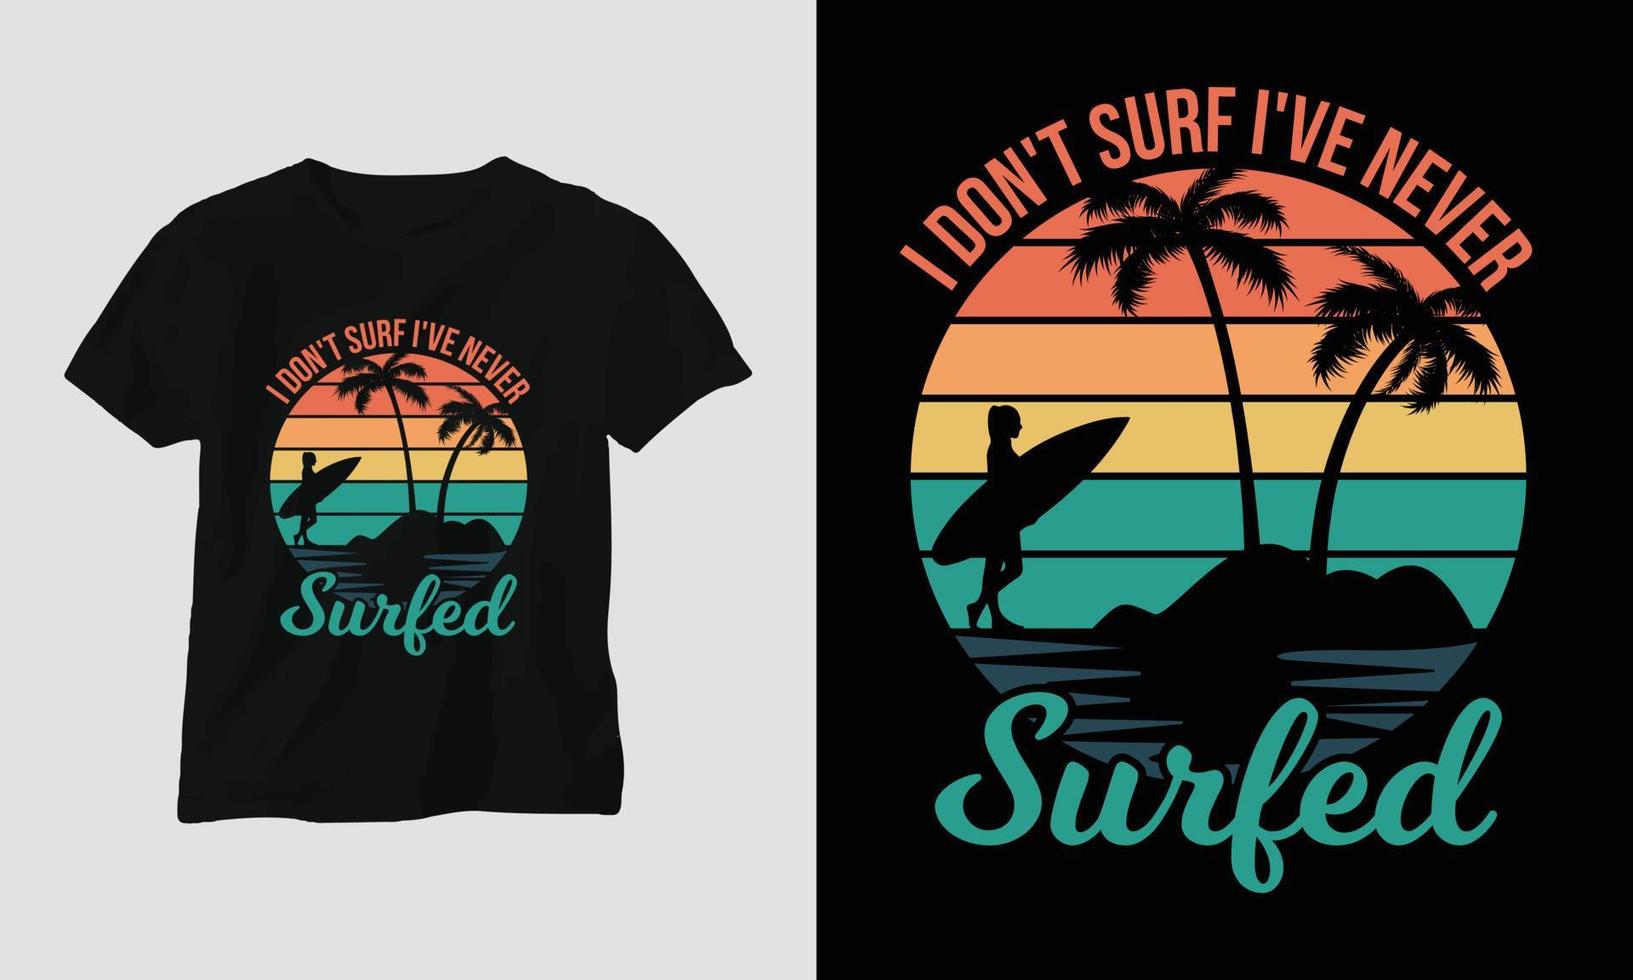 diseño de camisetas de surf, color retro vector